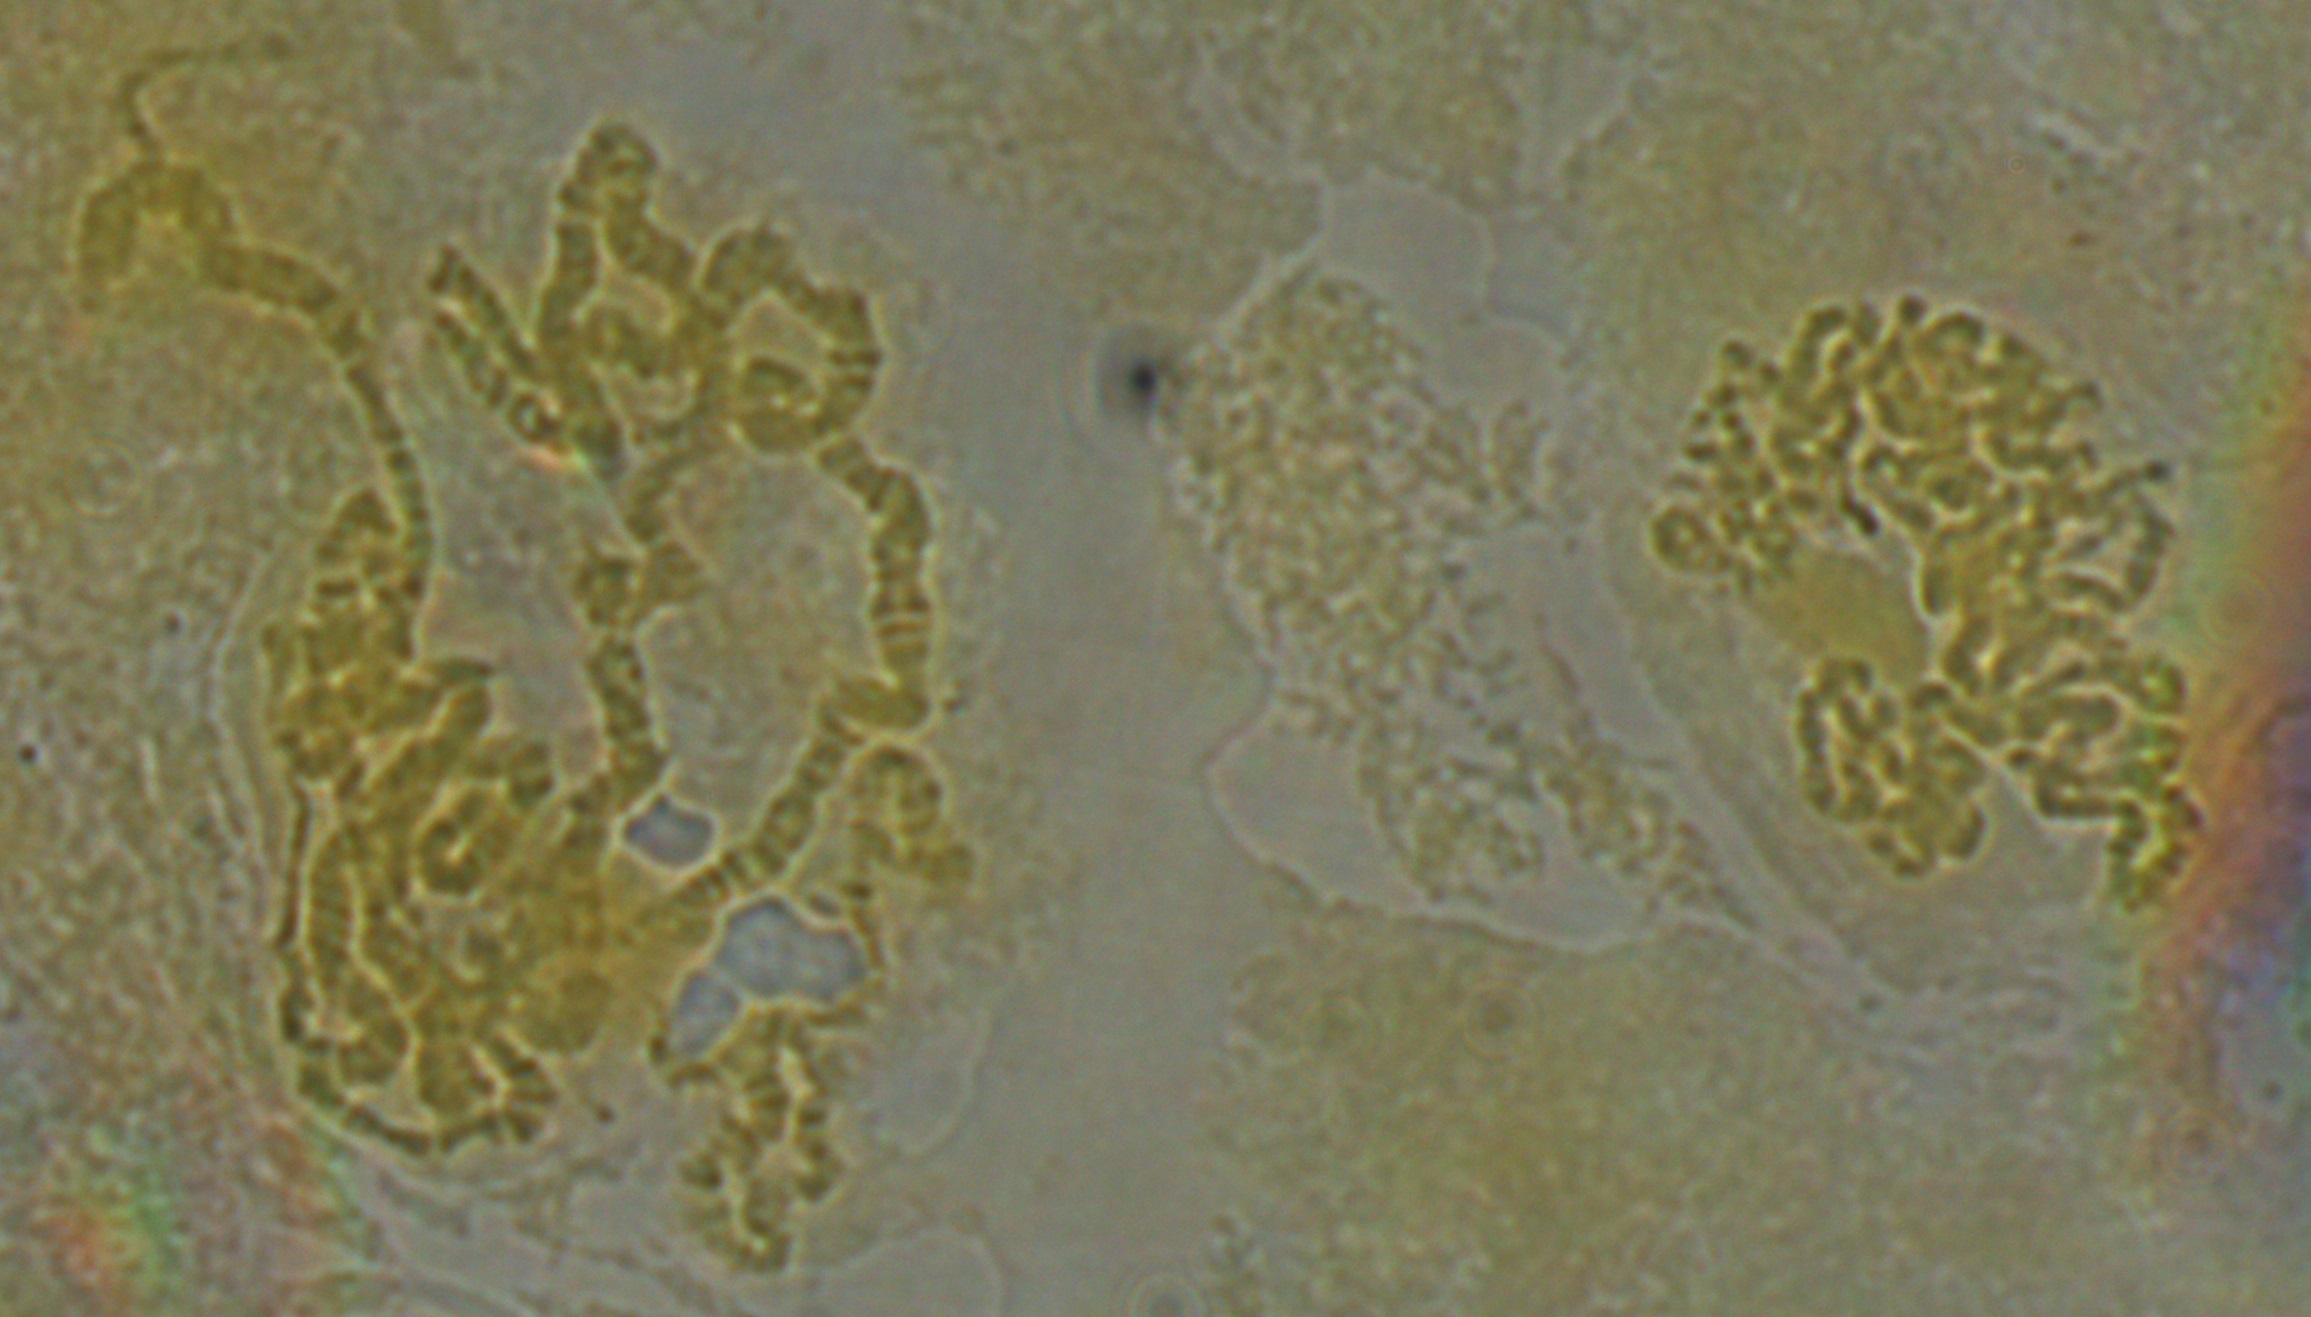 dmel-polytene-2014-07-28-12-03-43-chromosomes